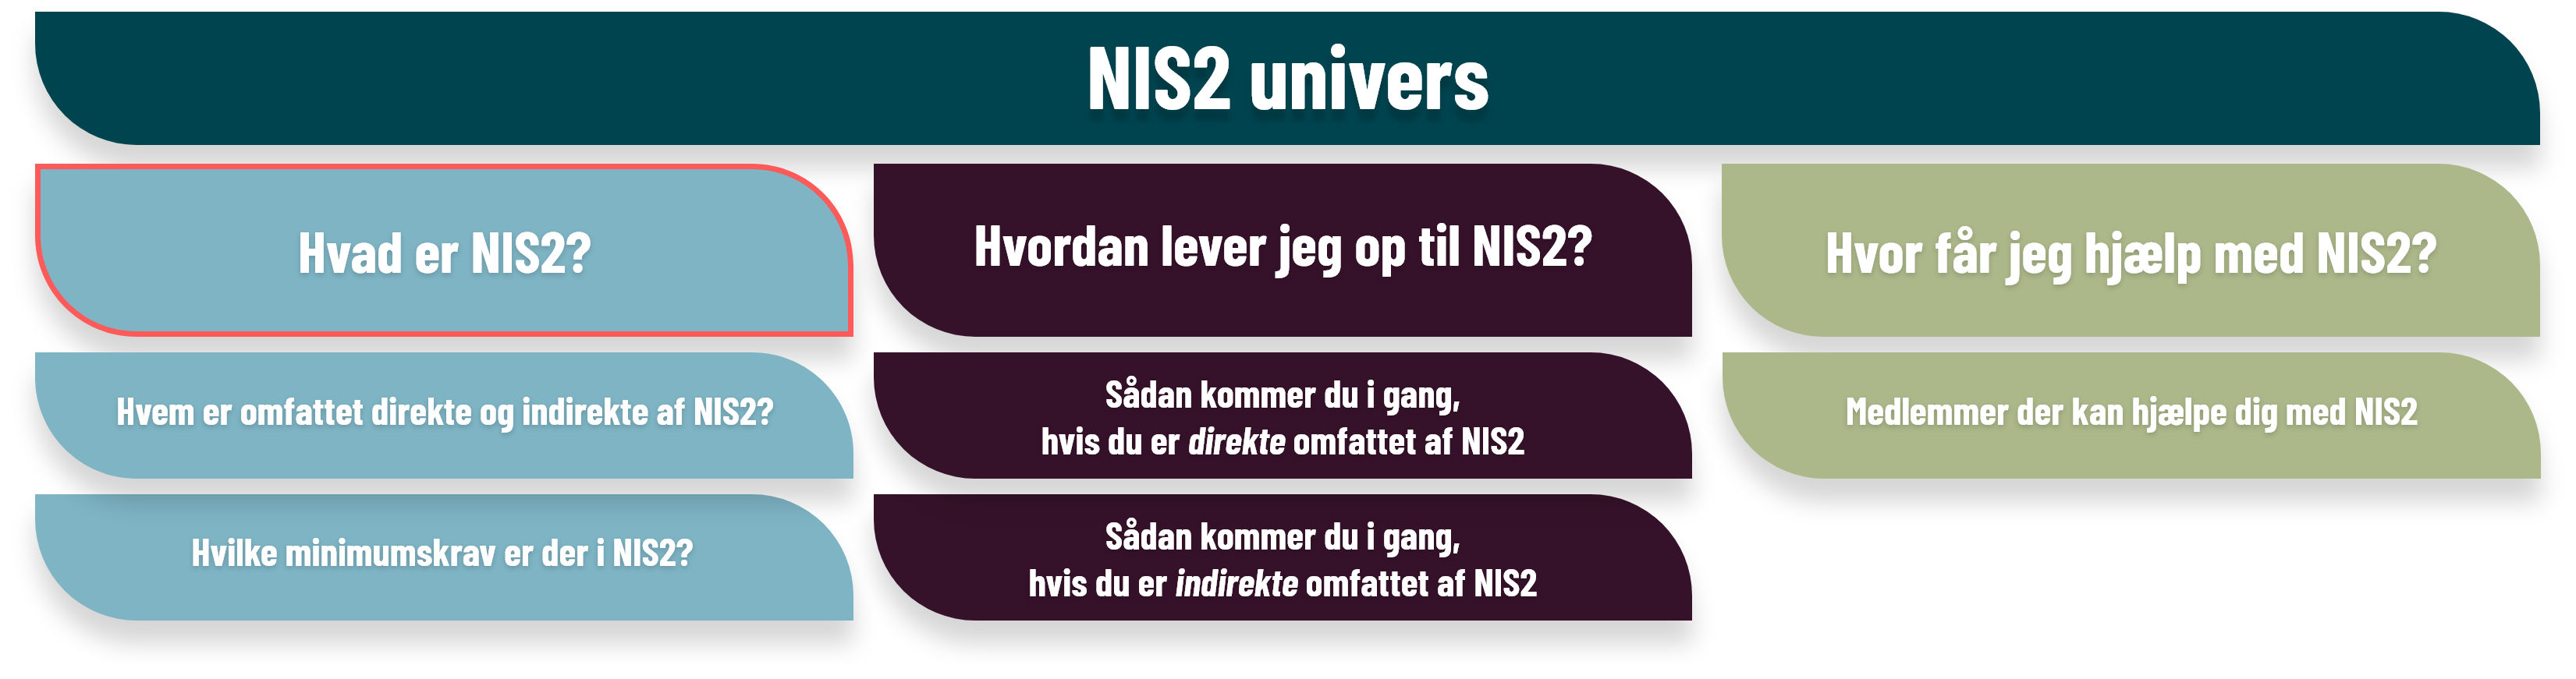 Hvad er NIS2?